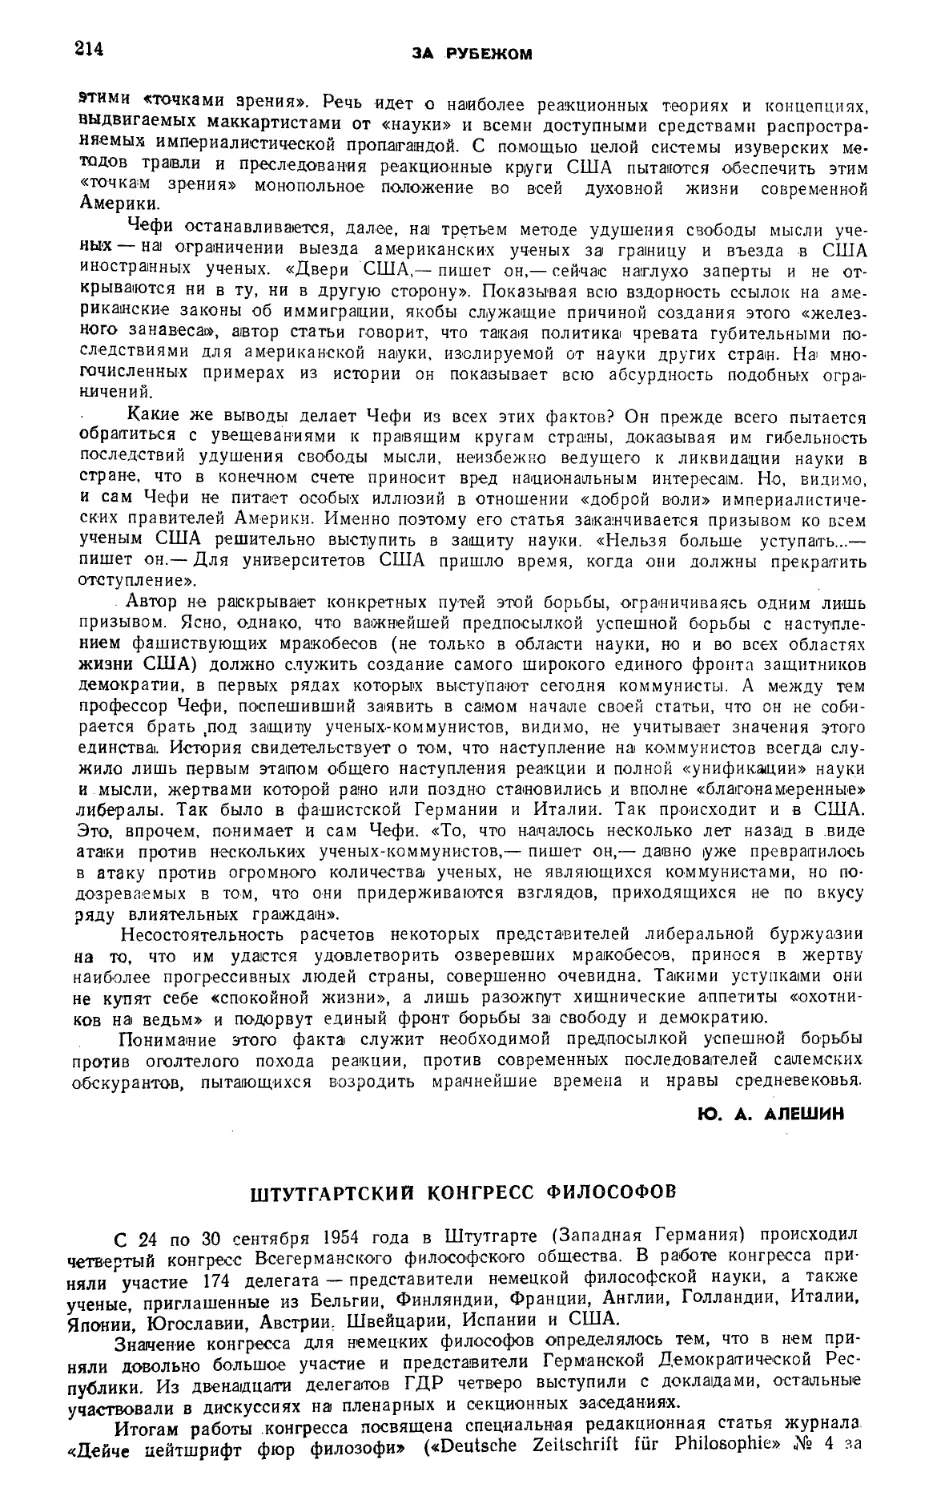 Н. Н. Залипская — Штутгартский конгресс философов